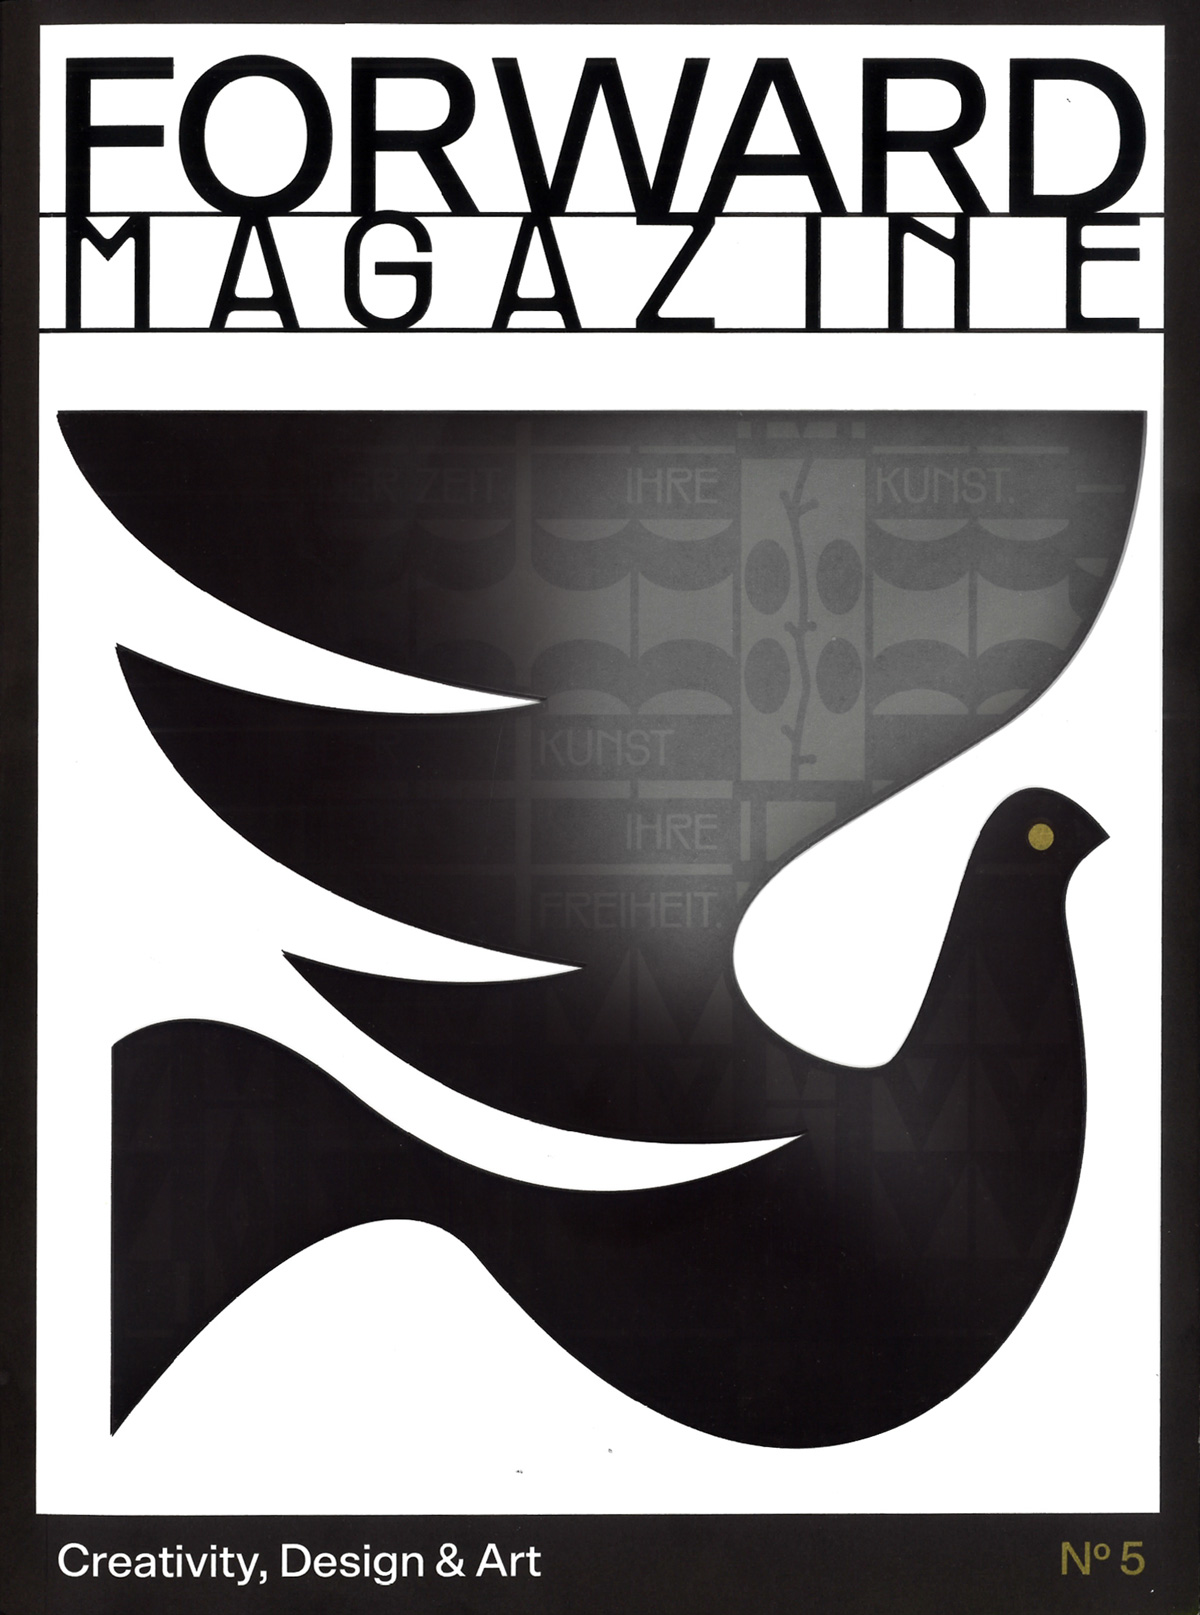 Forward Magazine—”Der Zeit ihre Kunst. Der Kunst ihre Freiheit”